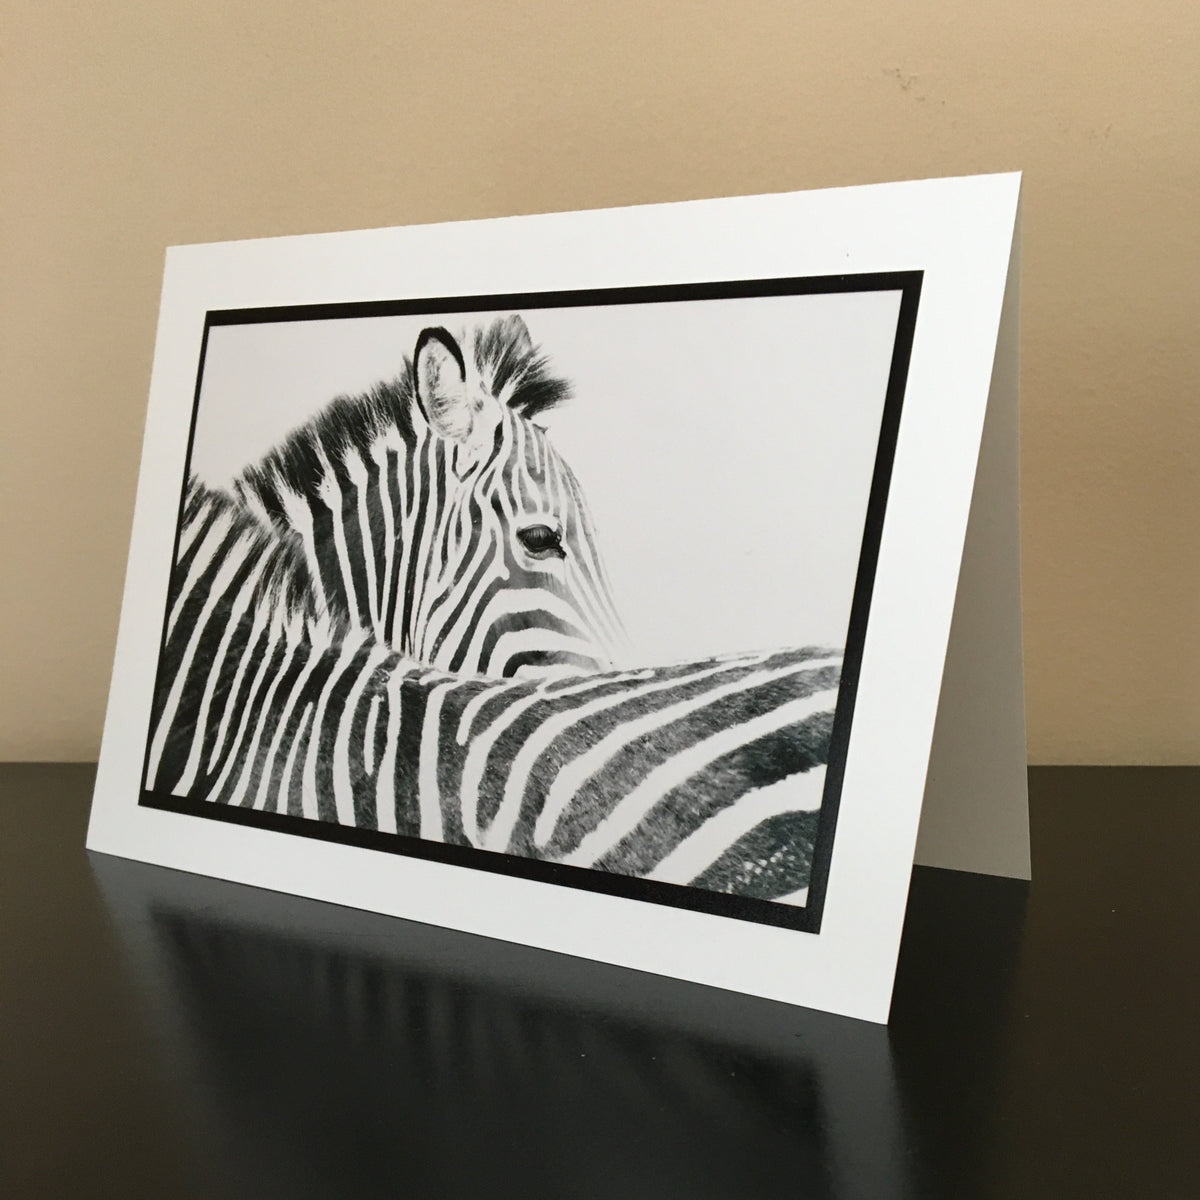 Zebra – Landriault Nature Photography